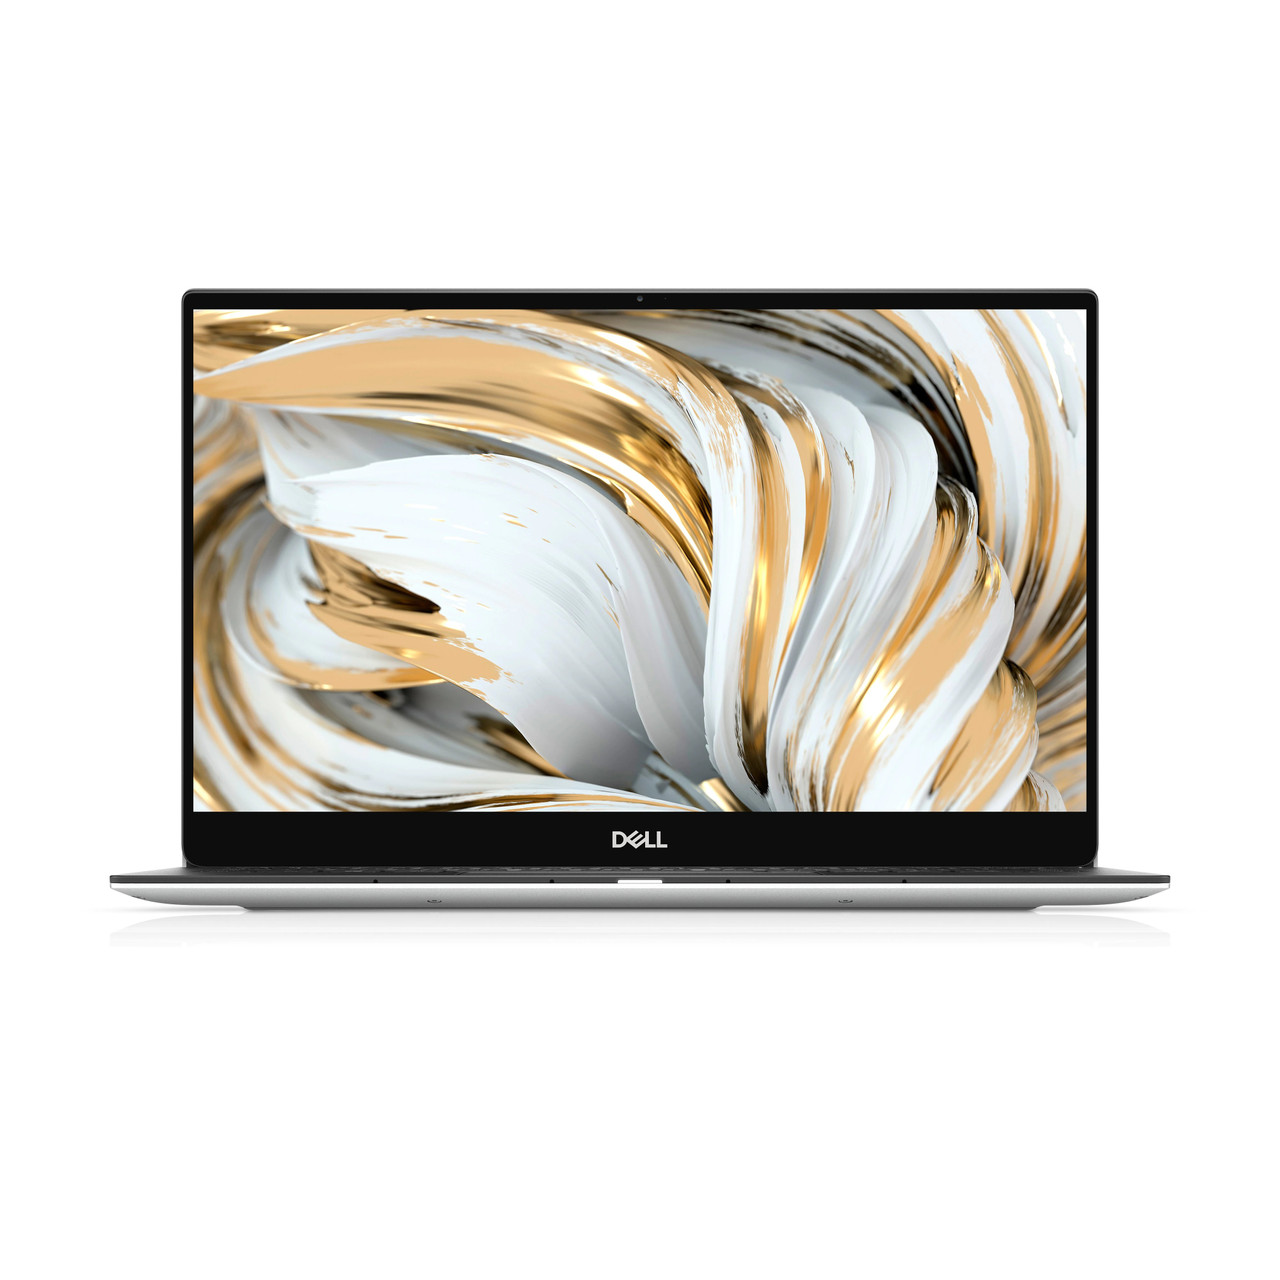 Dell XPS 13 Laptop: Core i5-1135G7, 8GB RAM, 256GB SSD, 13.3" Full HD  Display - Klick Online